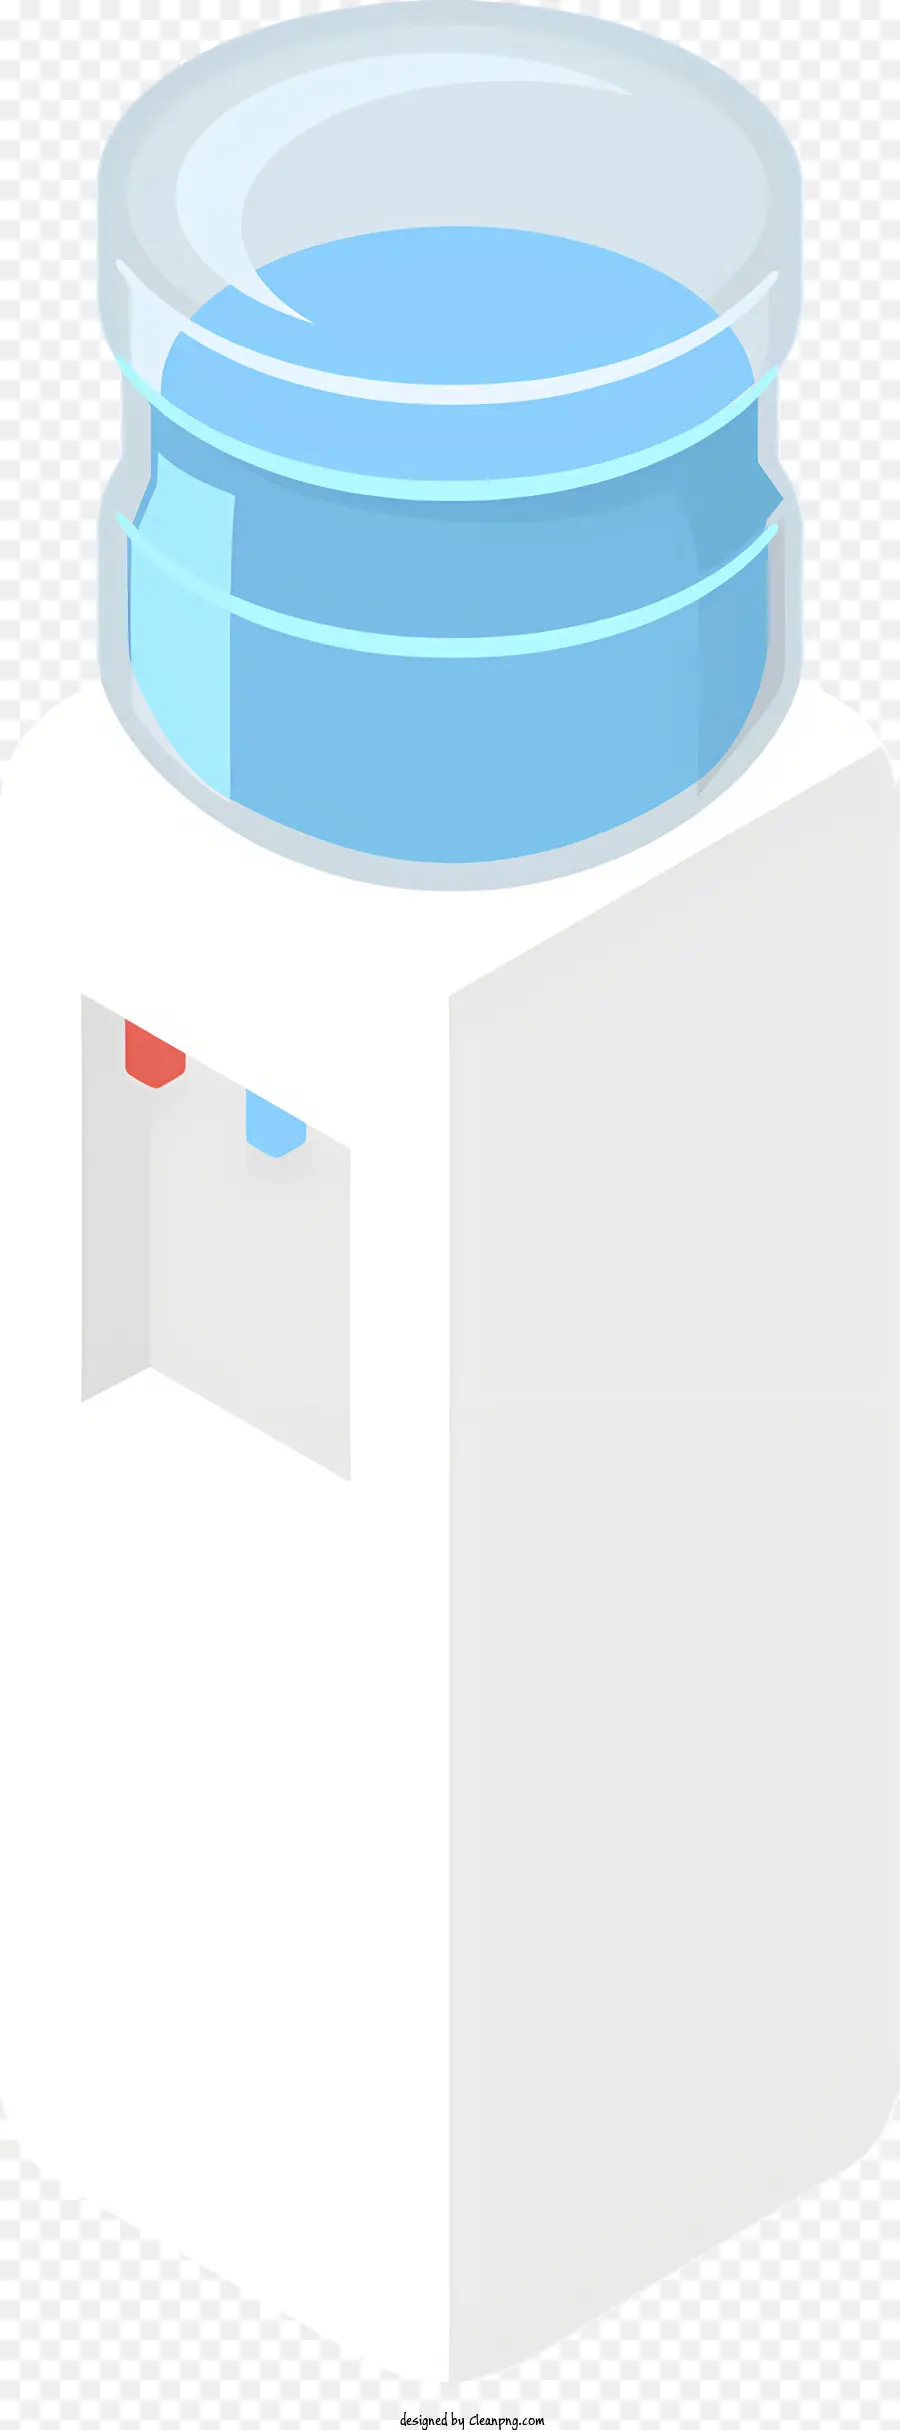 Icon Plastikbehälter Blau Deckel kreisförmiger Öffnen kleines Loch - Weißer Behälter mit blauem Deckel und Loch